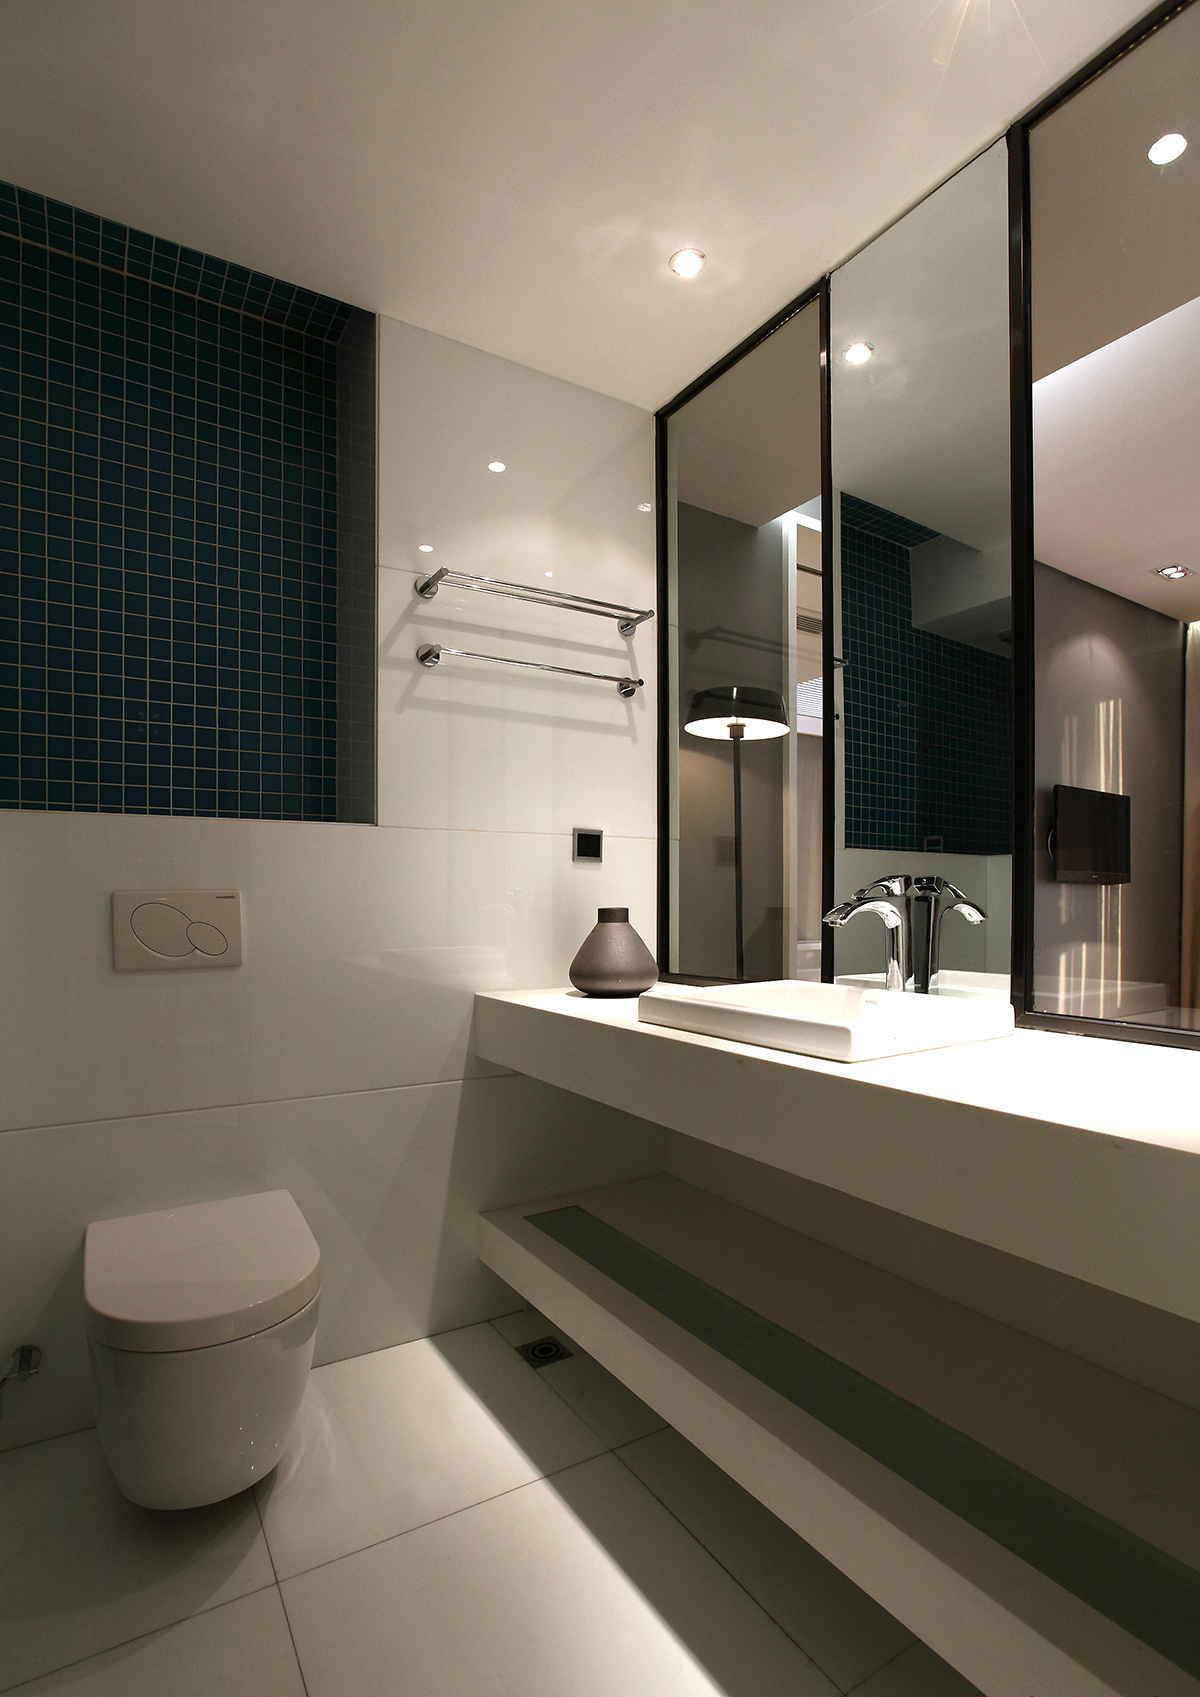 卫生间瓷砖选择上也是简约为主，大气且时尚。
